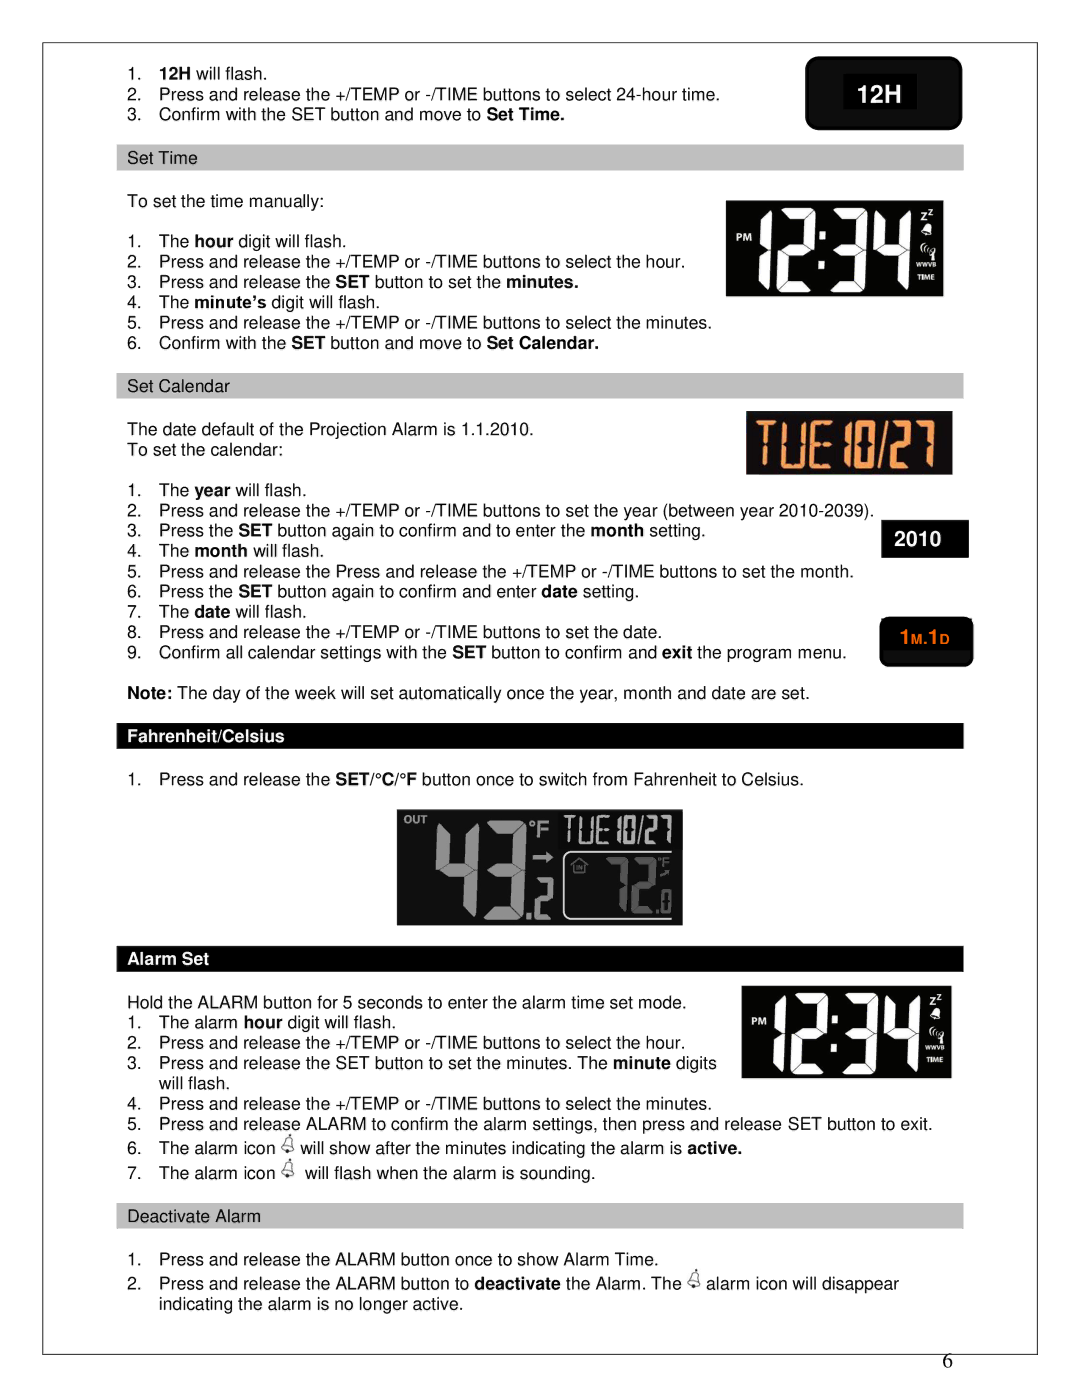 La Crosse Technology 616-146 instruction manual Fahrenheit/Celsius, Alarm Set 